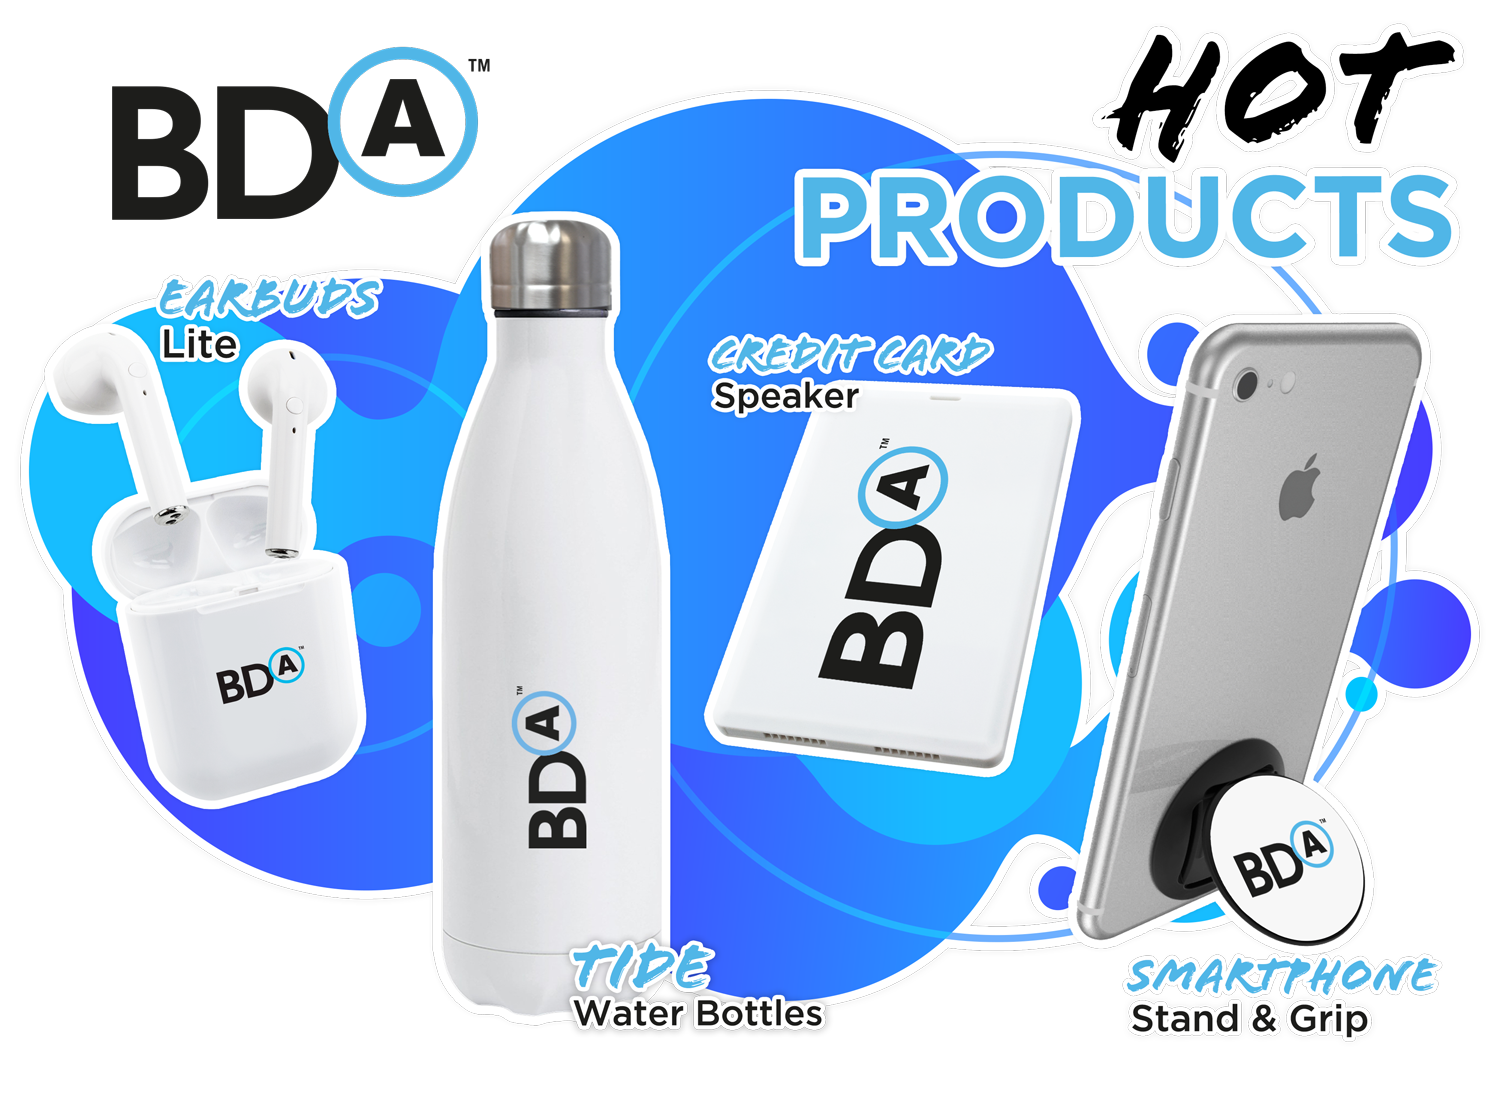 Smart-BDA-Product-Mailer.png